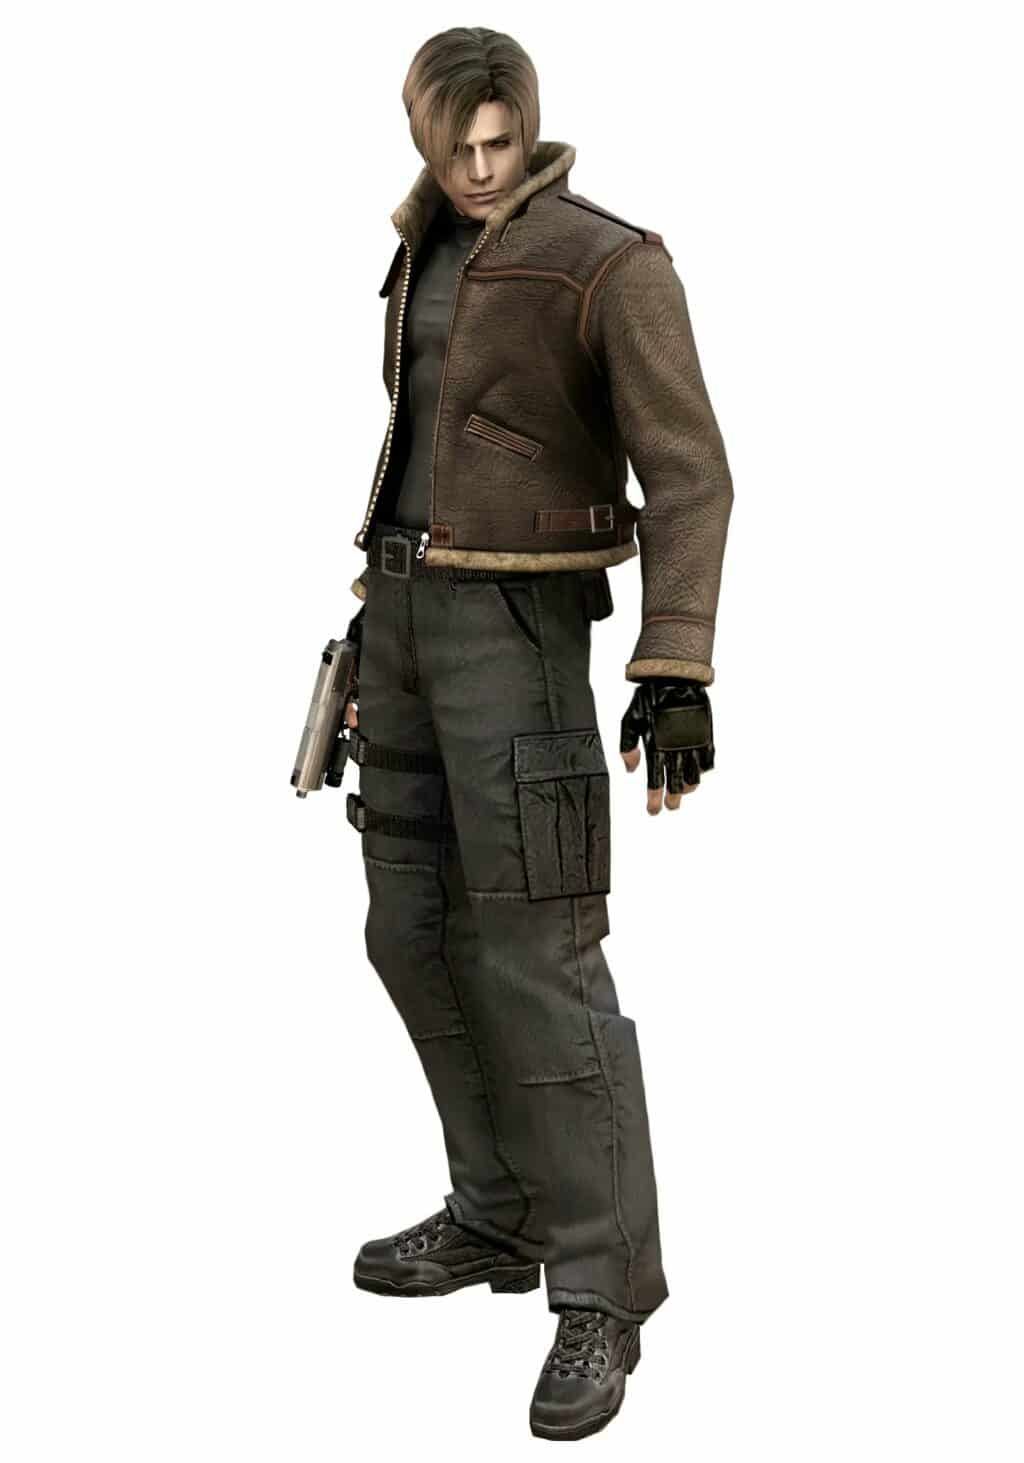 Conheçam a modelo para Claire Redfield em Resident Evil 2